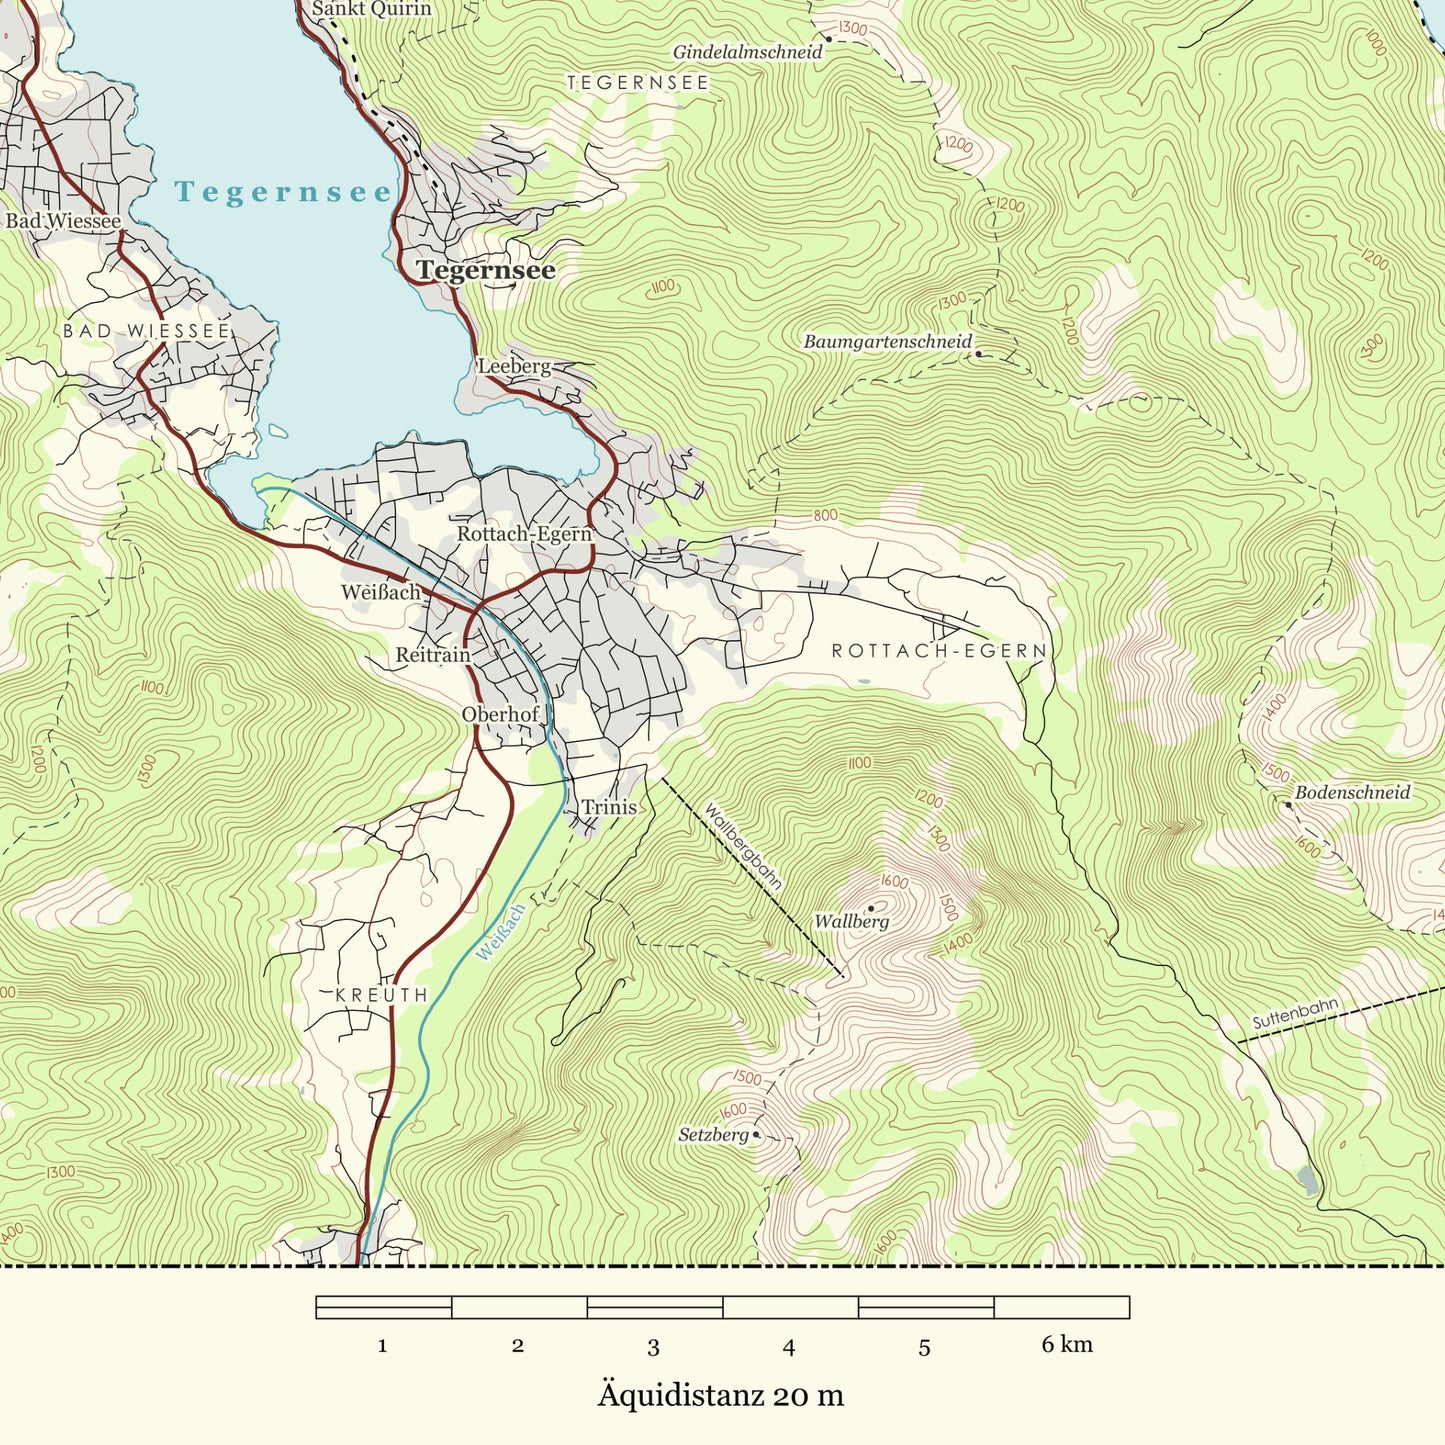 Tegernsee, Schliersee, Spitzingsee - Vintage Landkarte Bayern